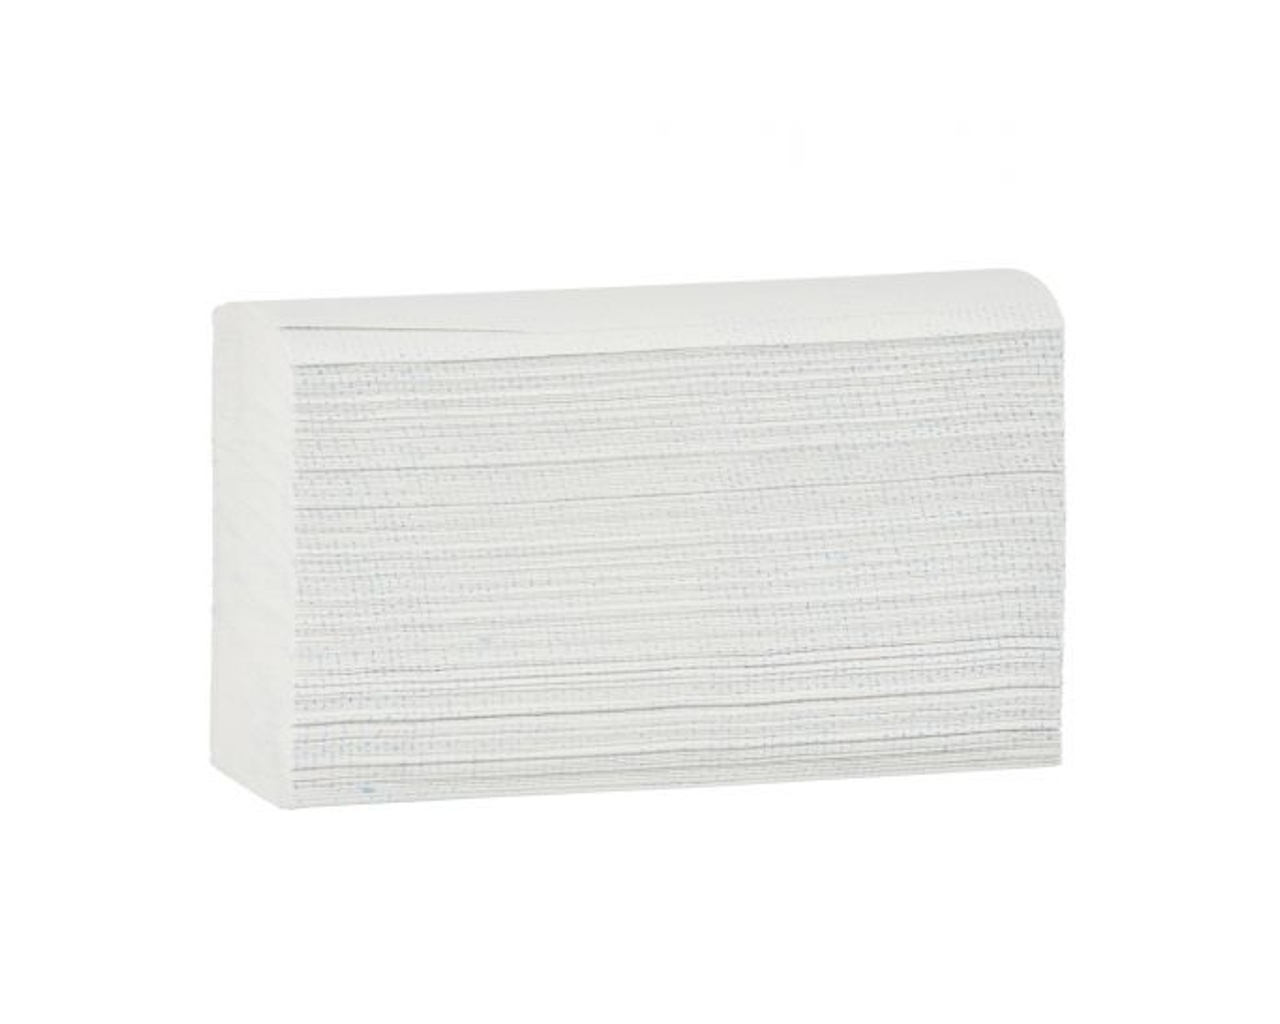 Ręczniki papierowe MERIDA OPTIMUM SLIM, białe, dwuwarstwowe, 3000 szt.